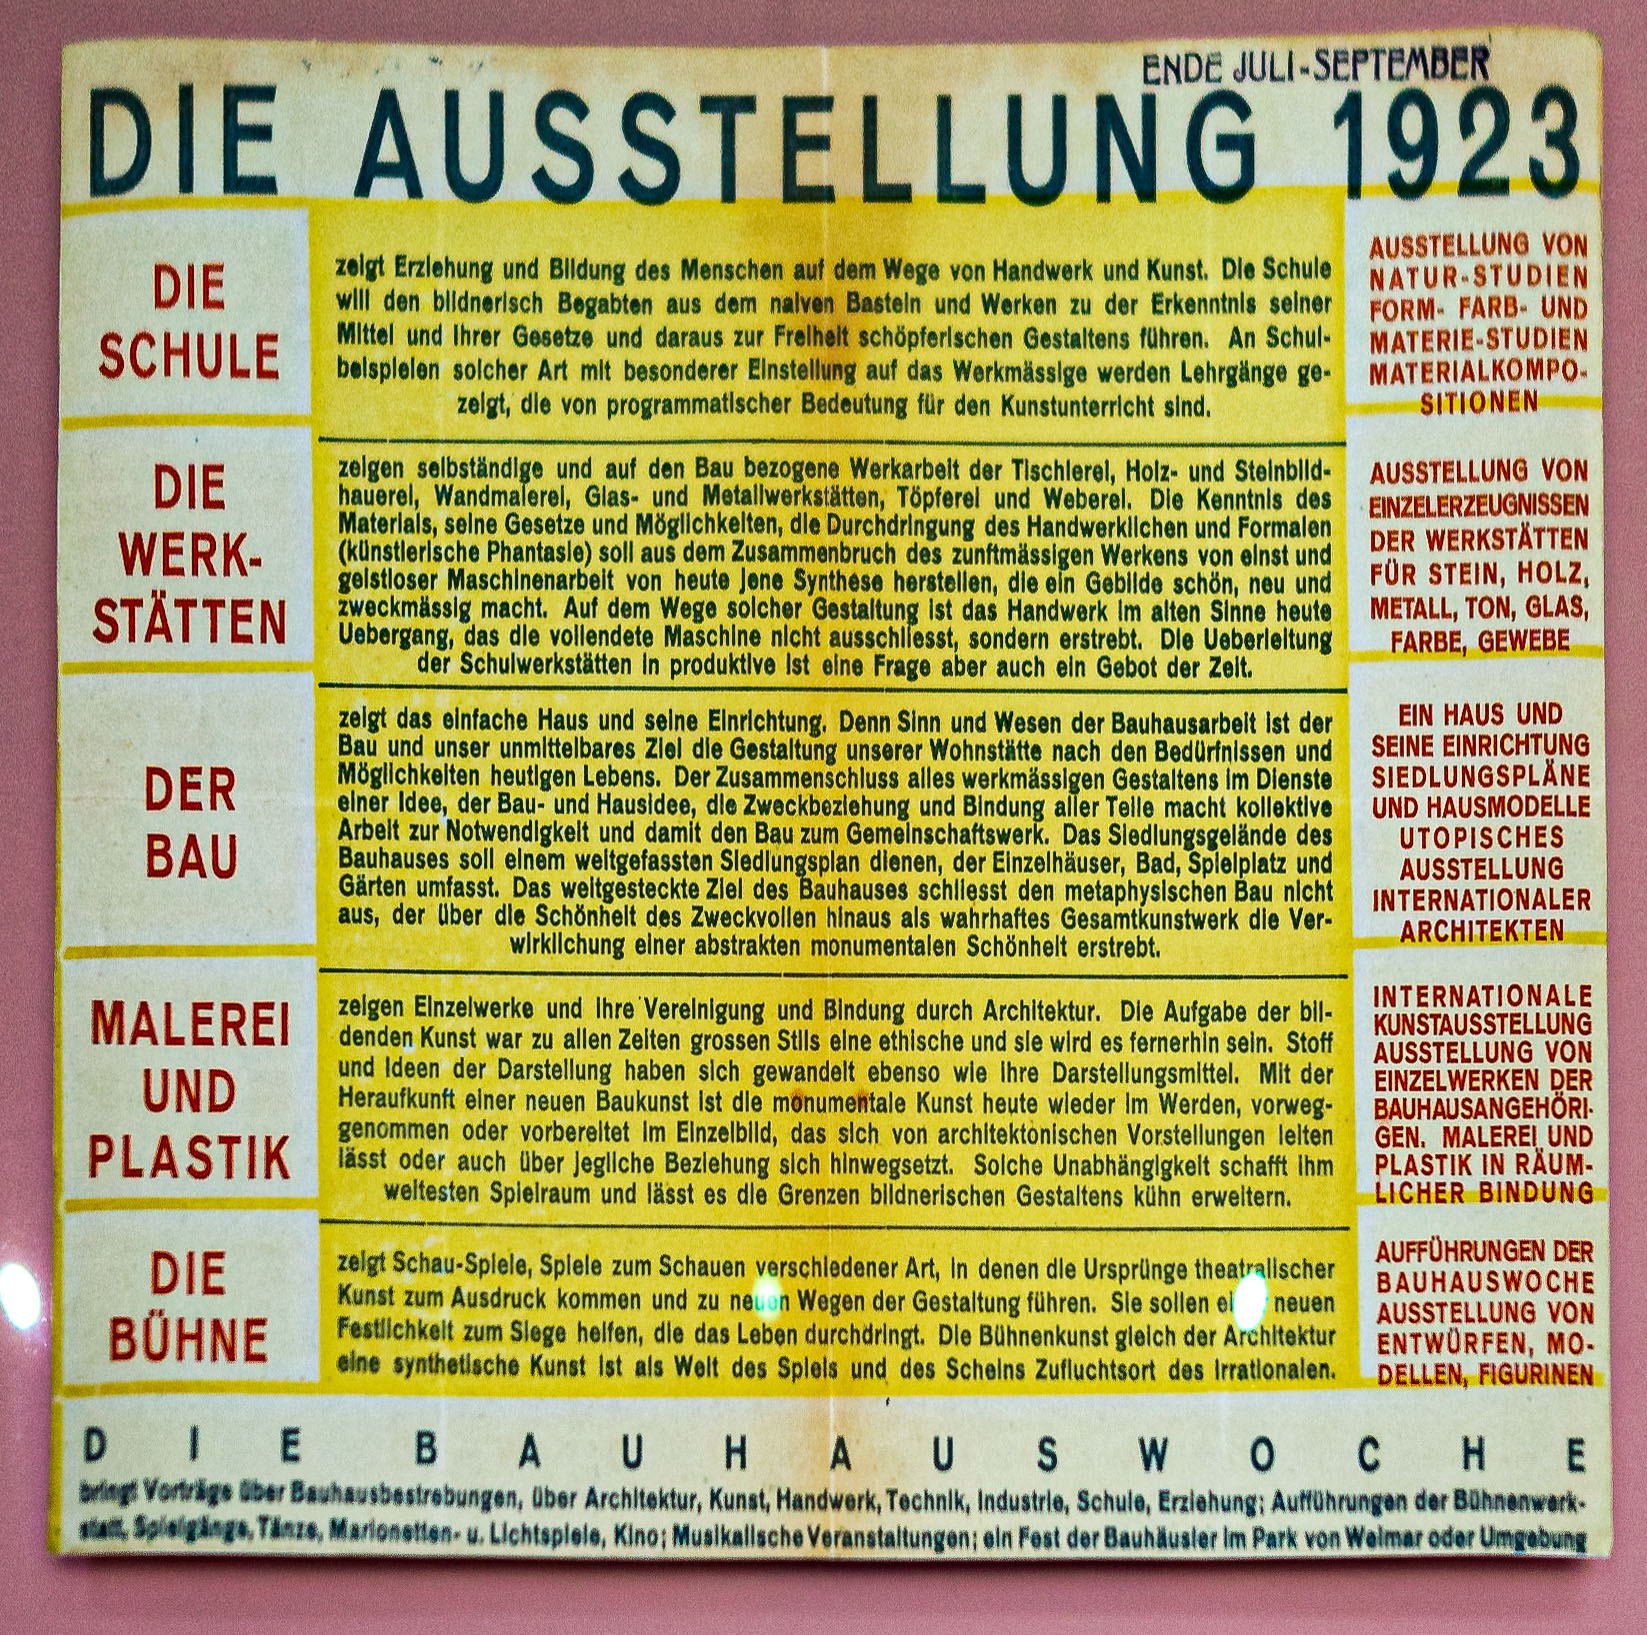 Bauhaus-Ausstellung 1923